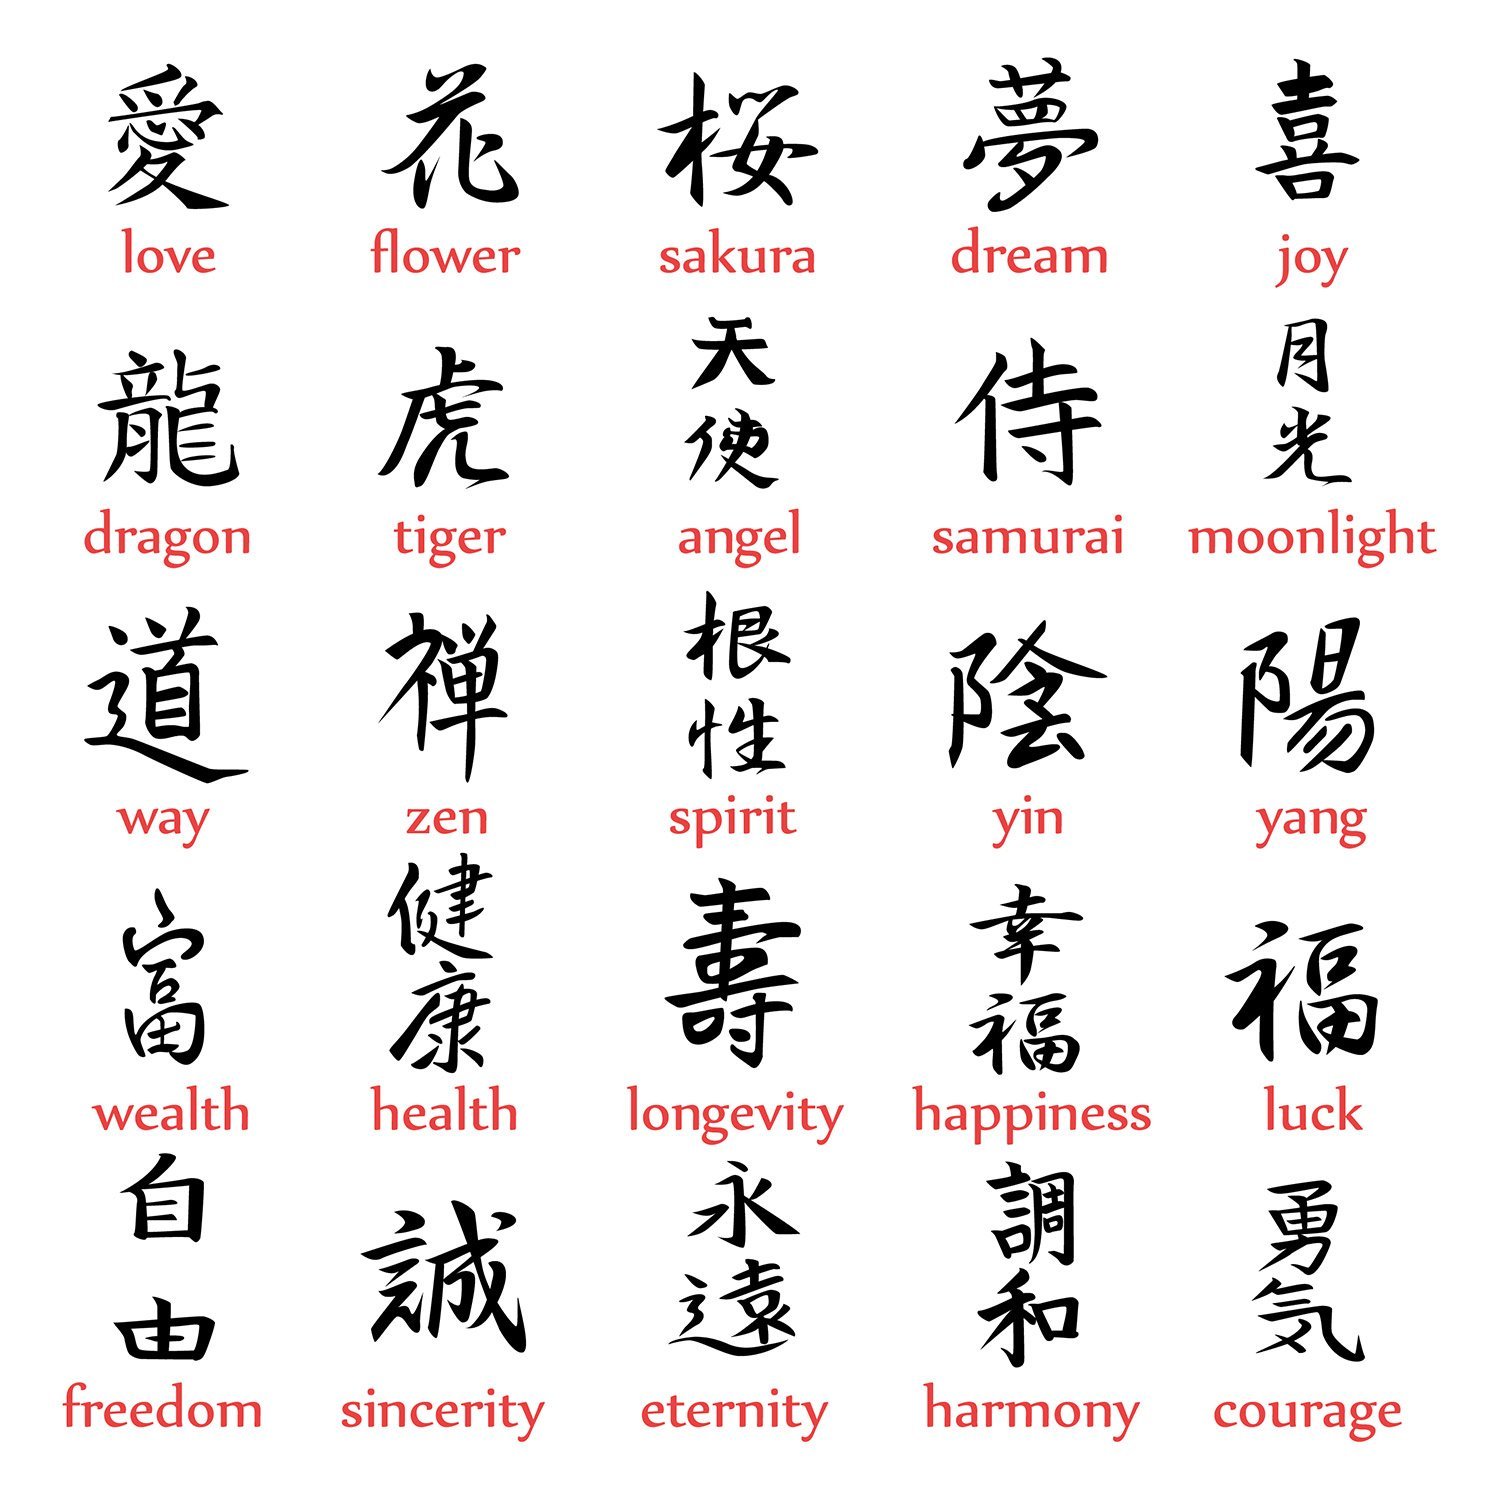 Переведи на китайский играй. Китайские символы с переводом. Иероглифы кандзи с переводом. Иероглифы китайские значение. Китайские иероглифы с переводом.